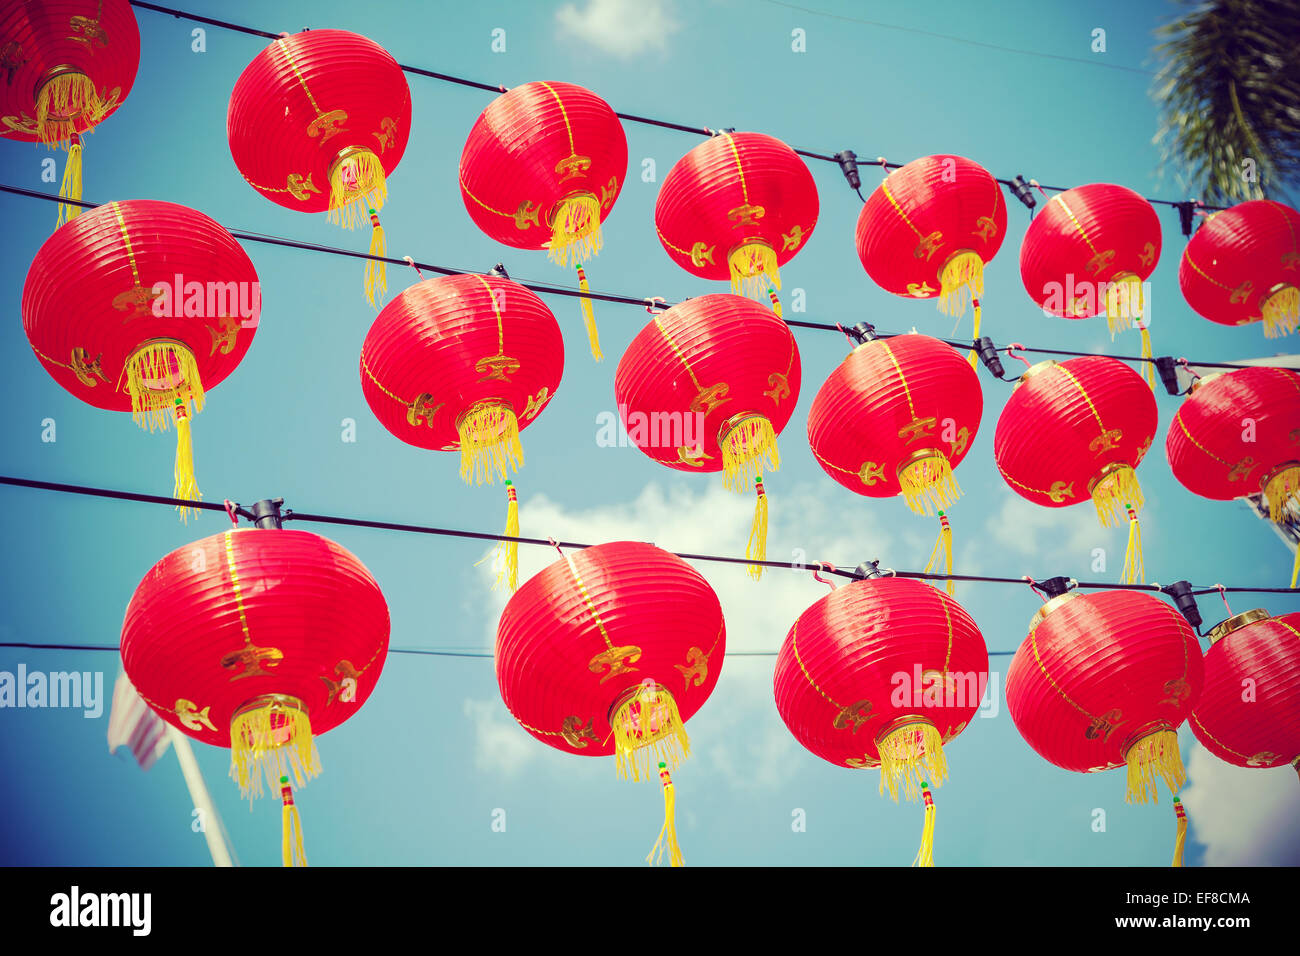 Filtrée rétro rouge chinois des lanternes en papier contre le ciel bleu. Banque D'Images